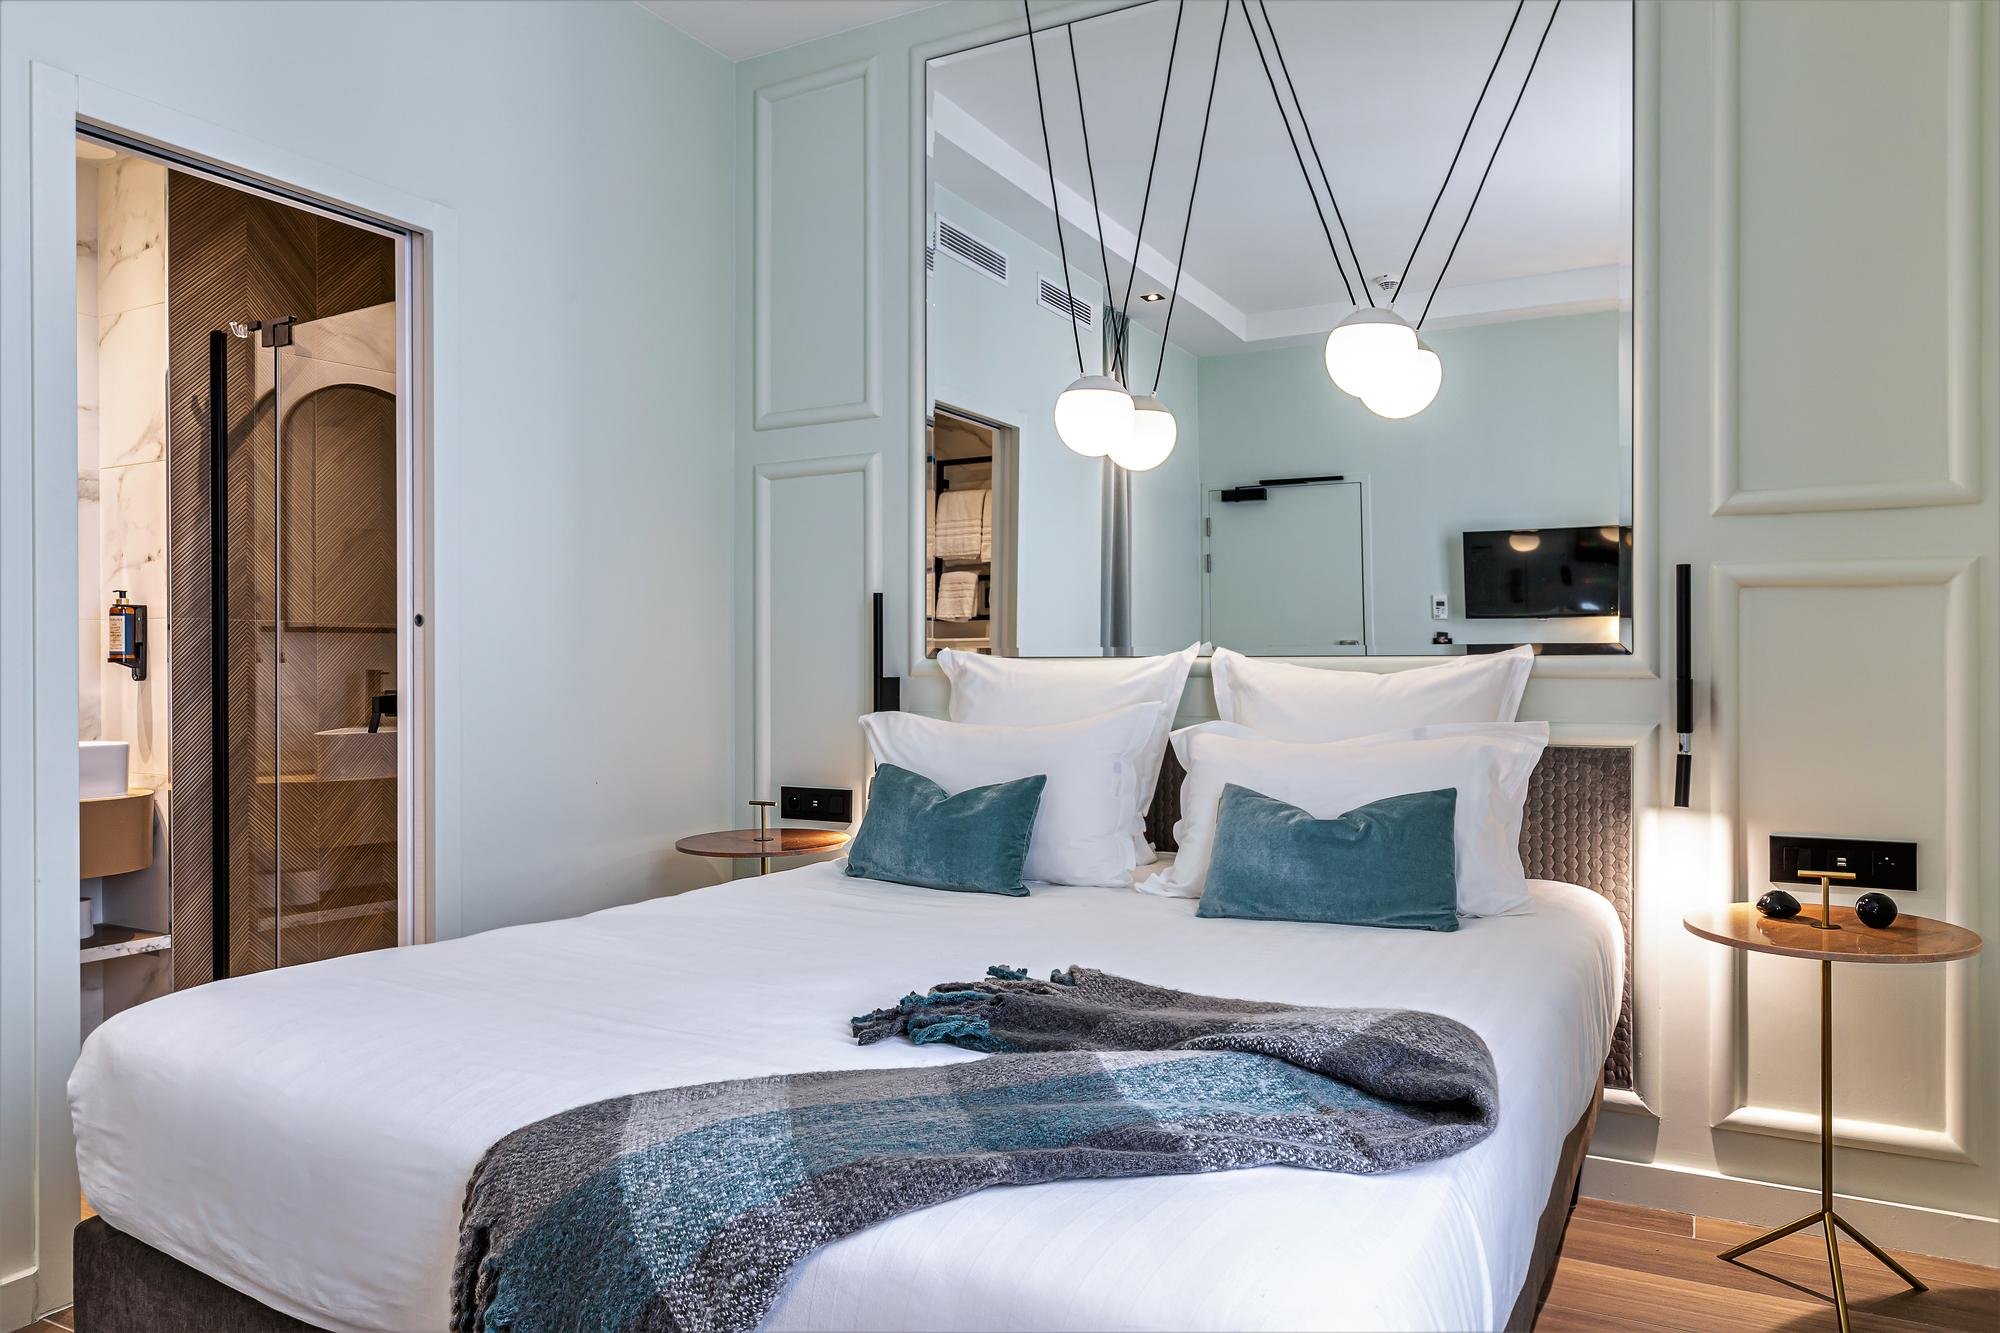 Hôtel Veryste - Verycharm room - Bed